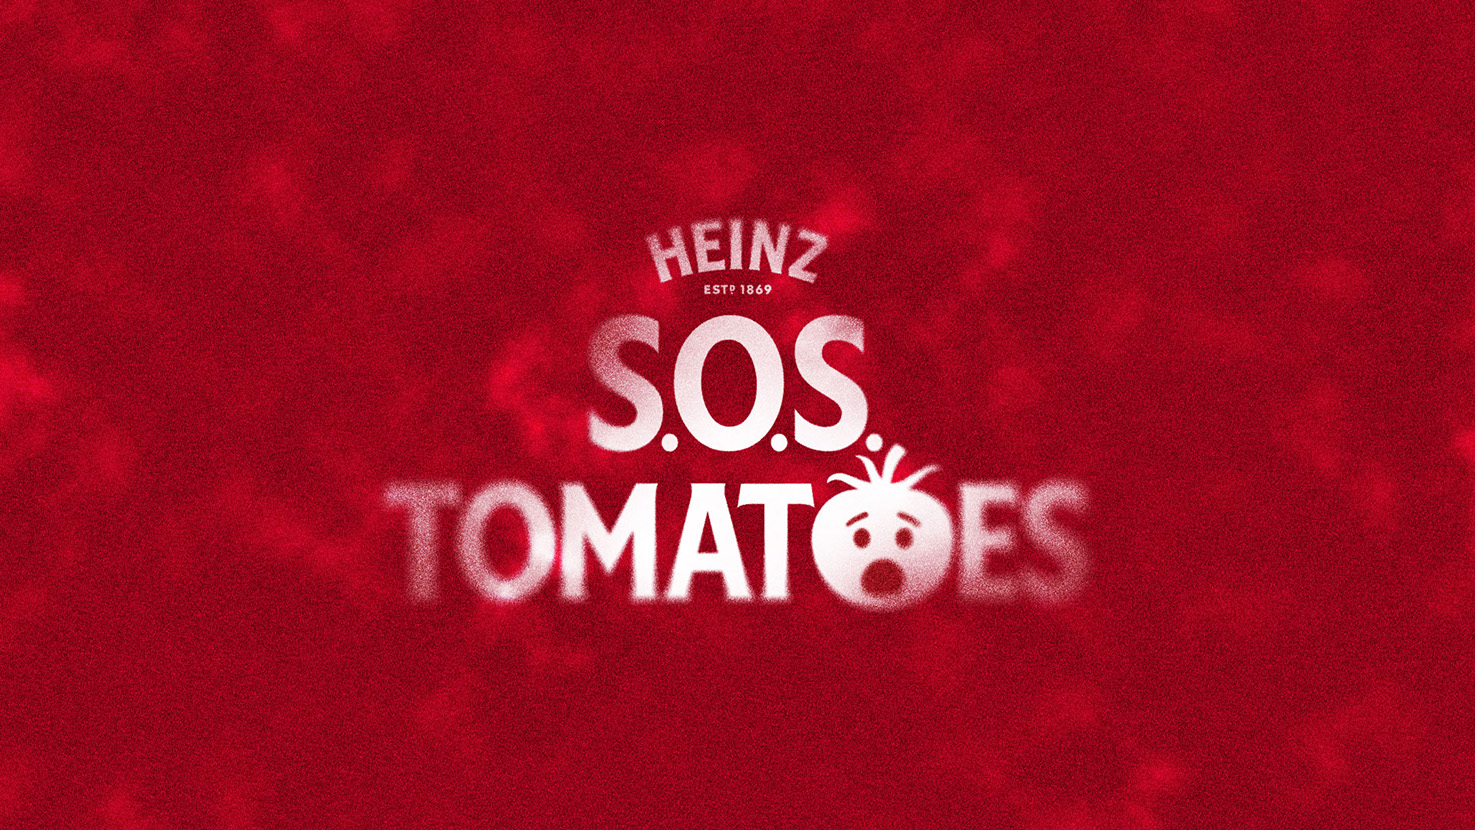 Heinz S.O.S Tomato Island